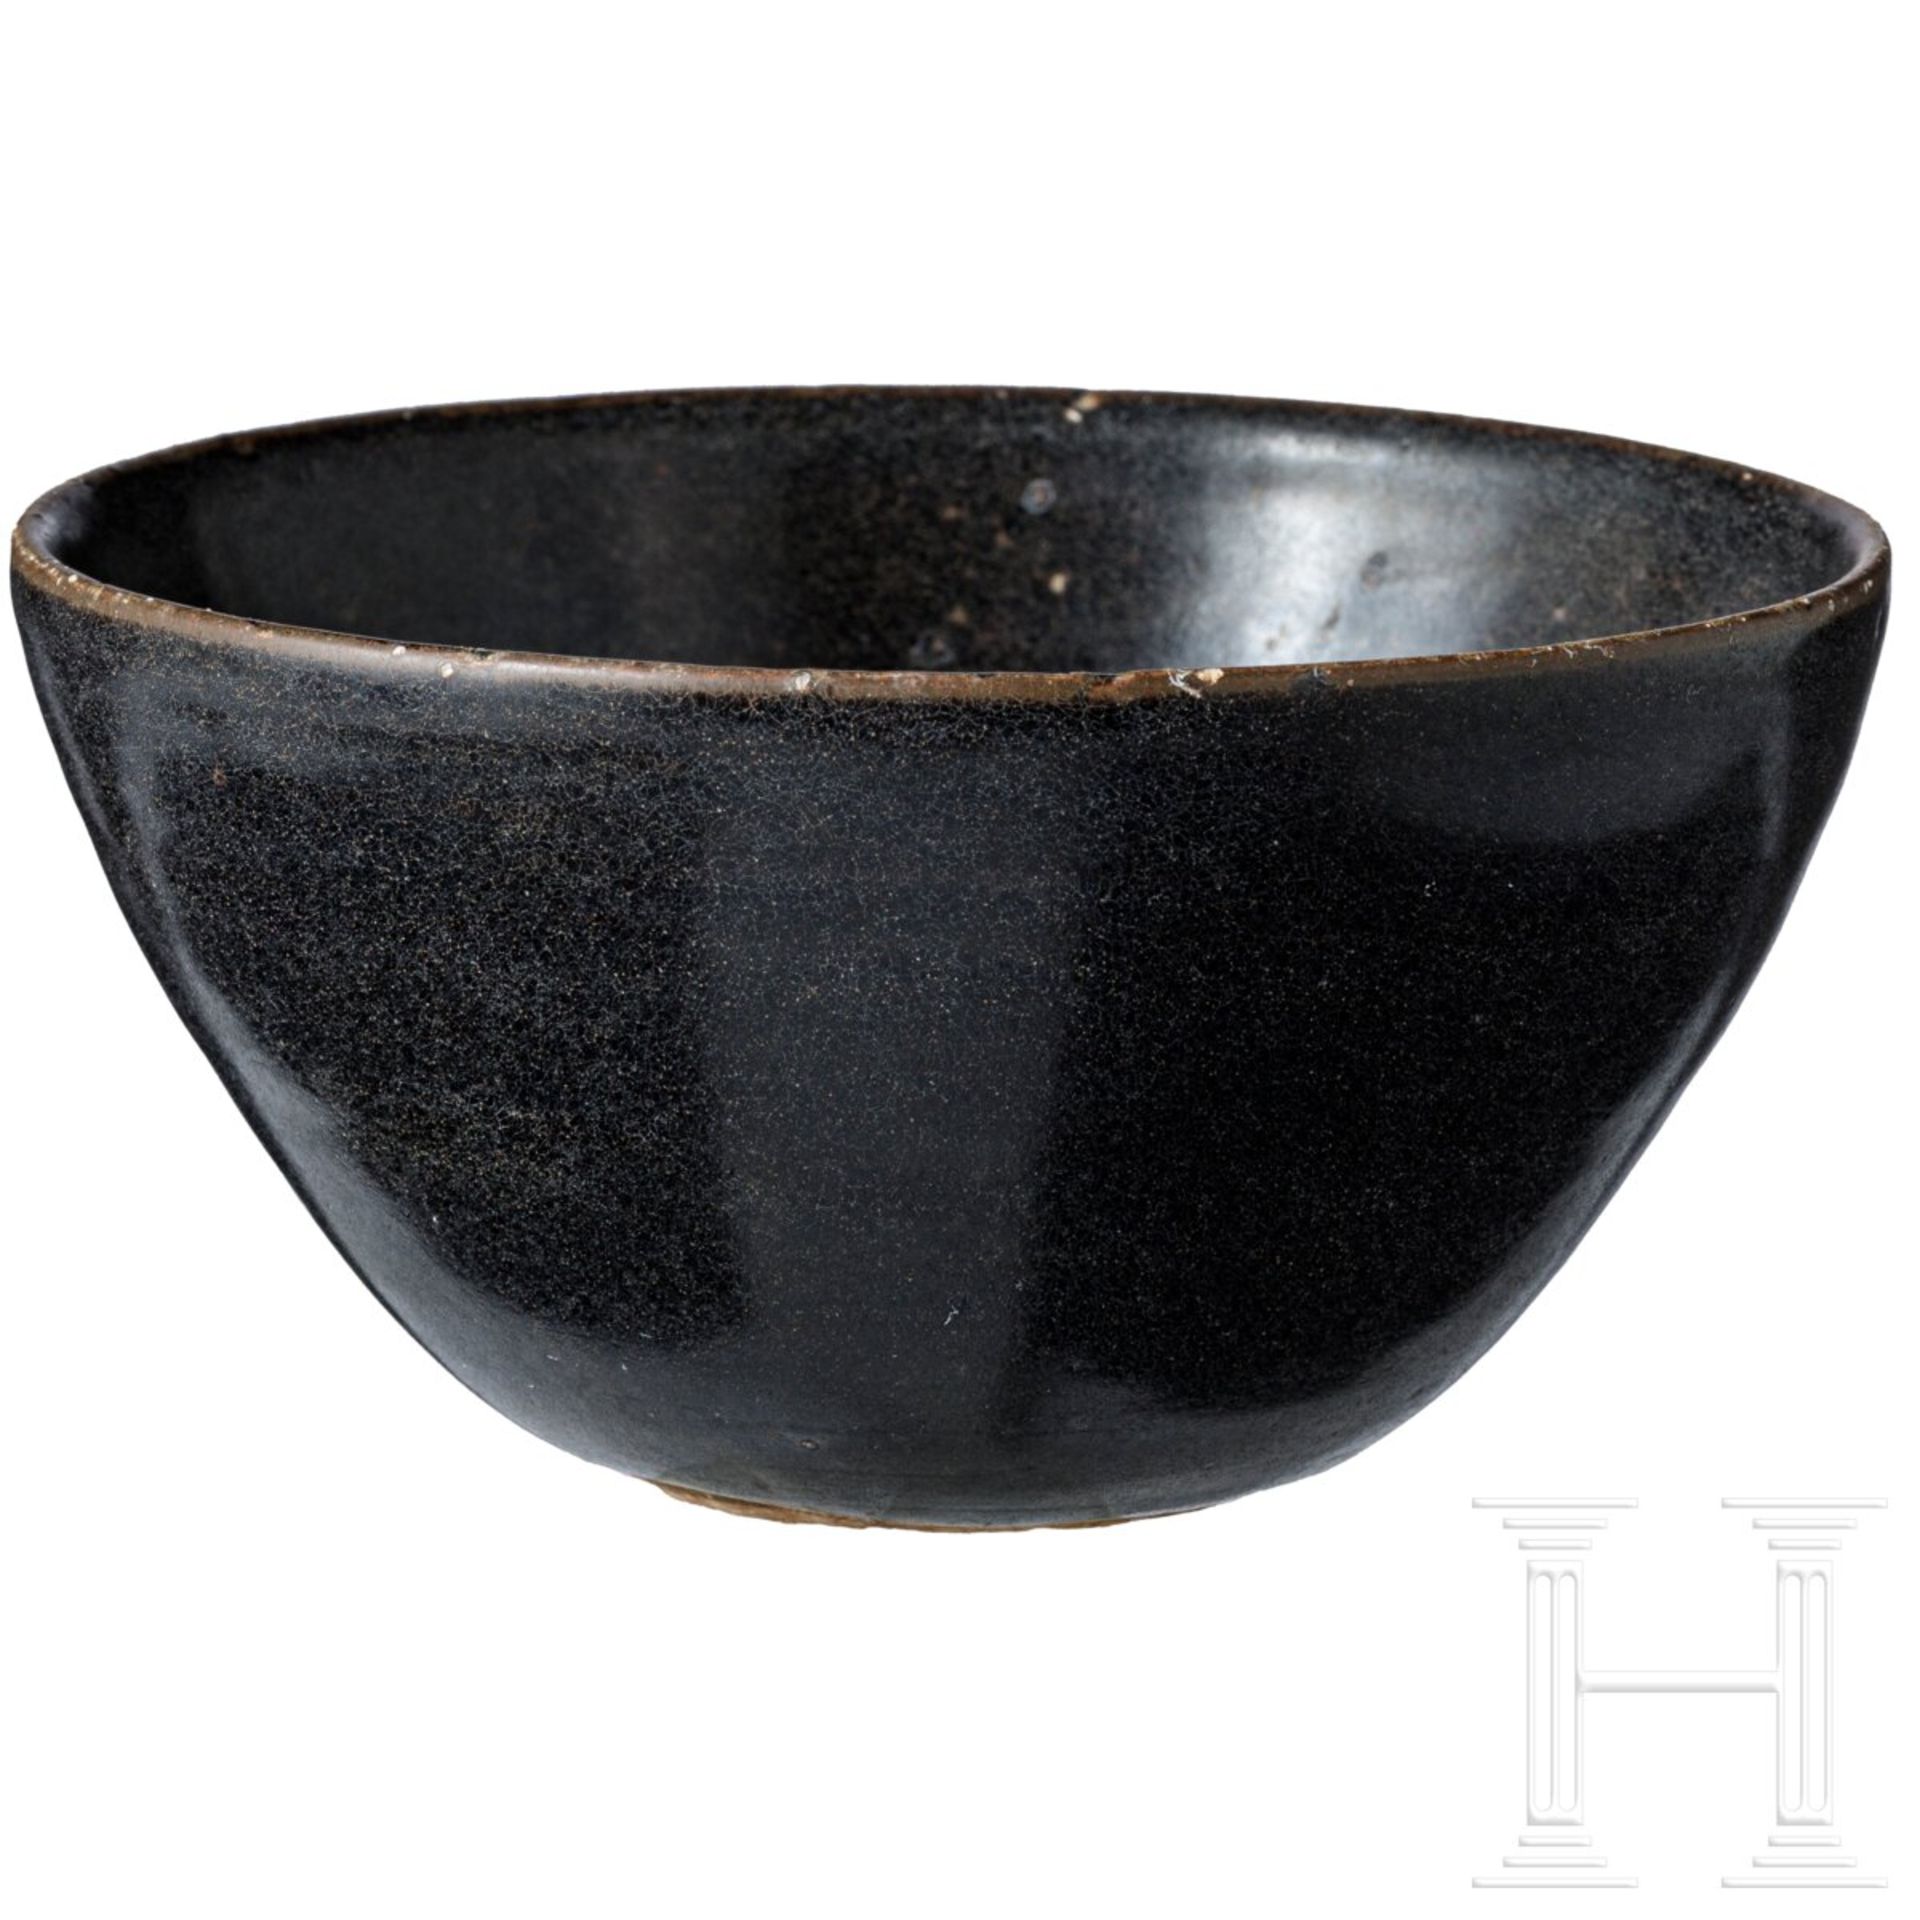 Jizhou-Teeschale, schwarz glasiert, wohl südliche Song-Dynastie (12. - 13. Jhdt.) - Image 4 of 17